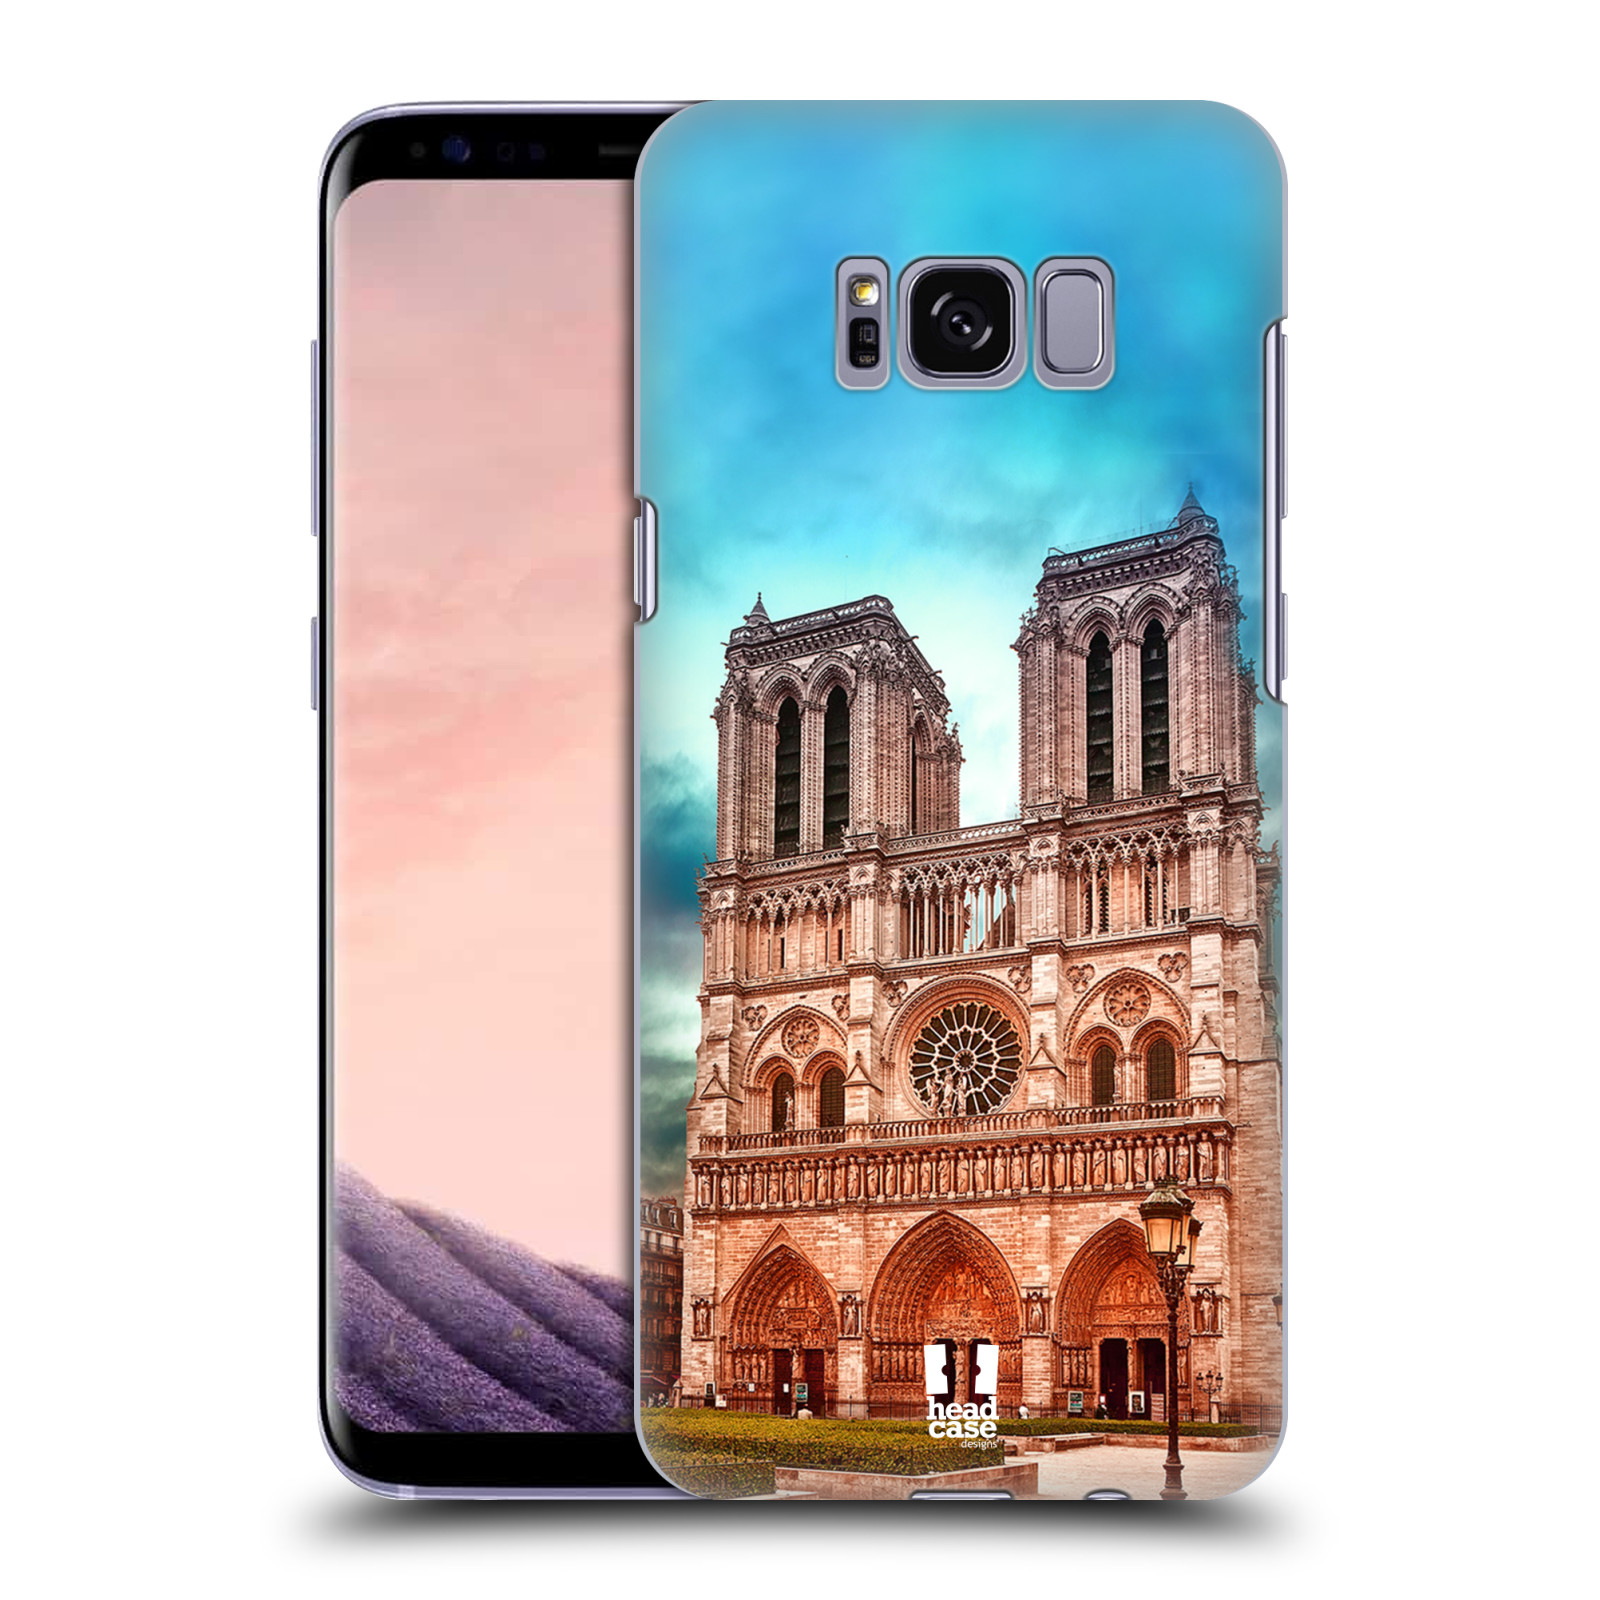 Pouzdro na mobil Samsung Galaxy S8 - HEAD CASE - historická místa katedrála Notre Dame